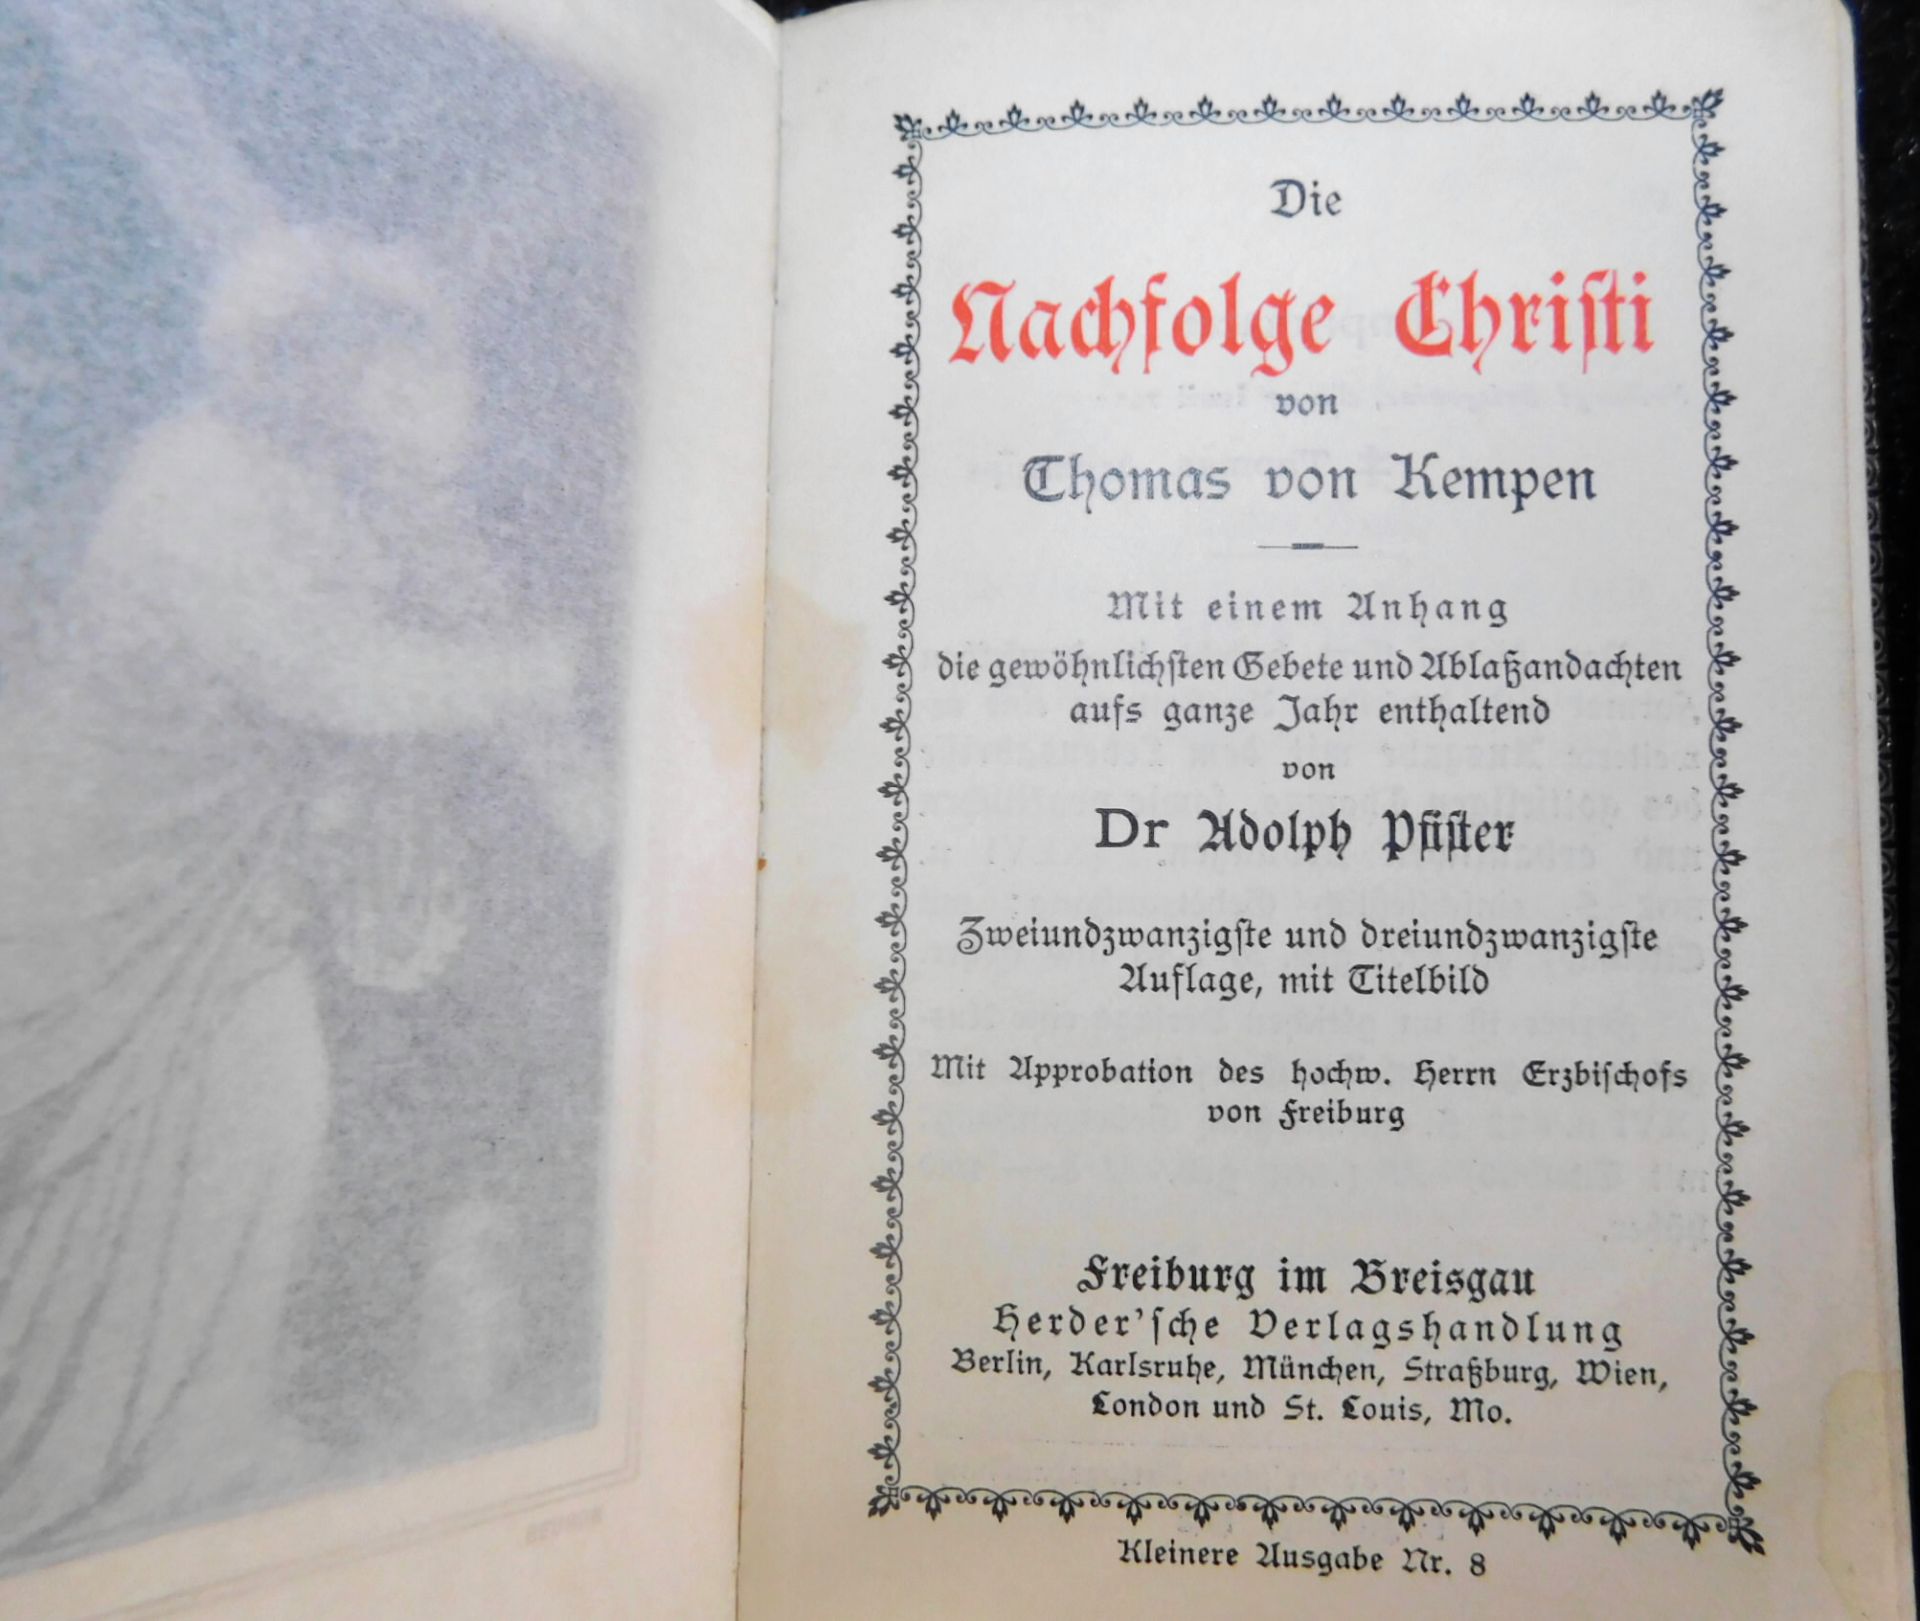 3 Gebetbücher, Nachf. Christi, 1912, Gebet u. gesangbuch Erzbistum Köln, 1935, Kath. Gebetbuch - Bild 2 aus 7